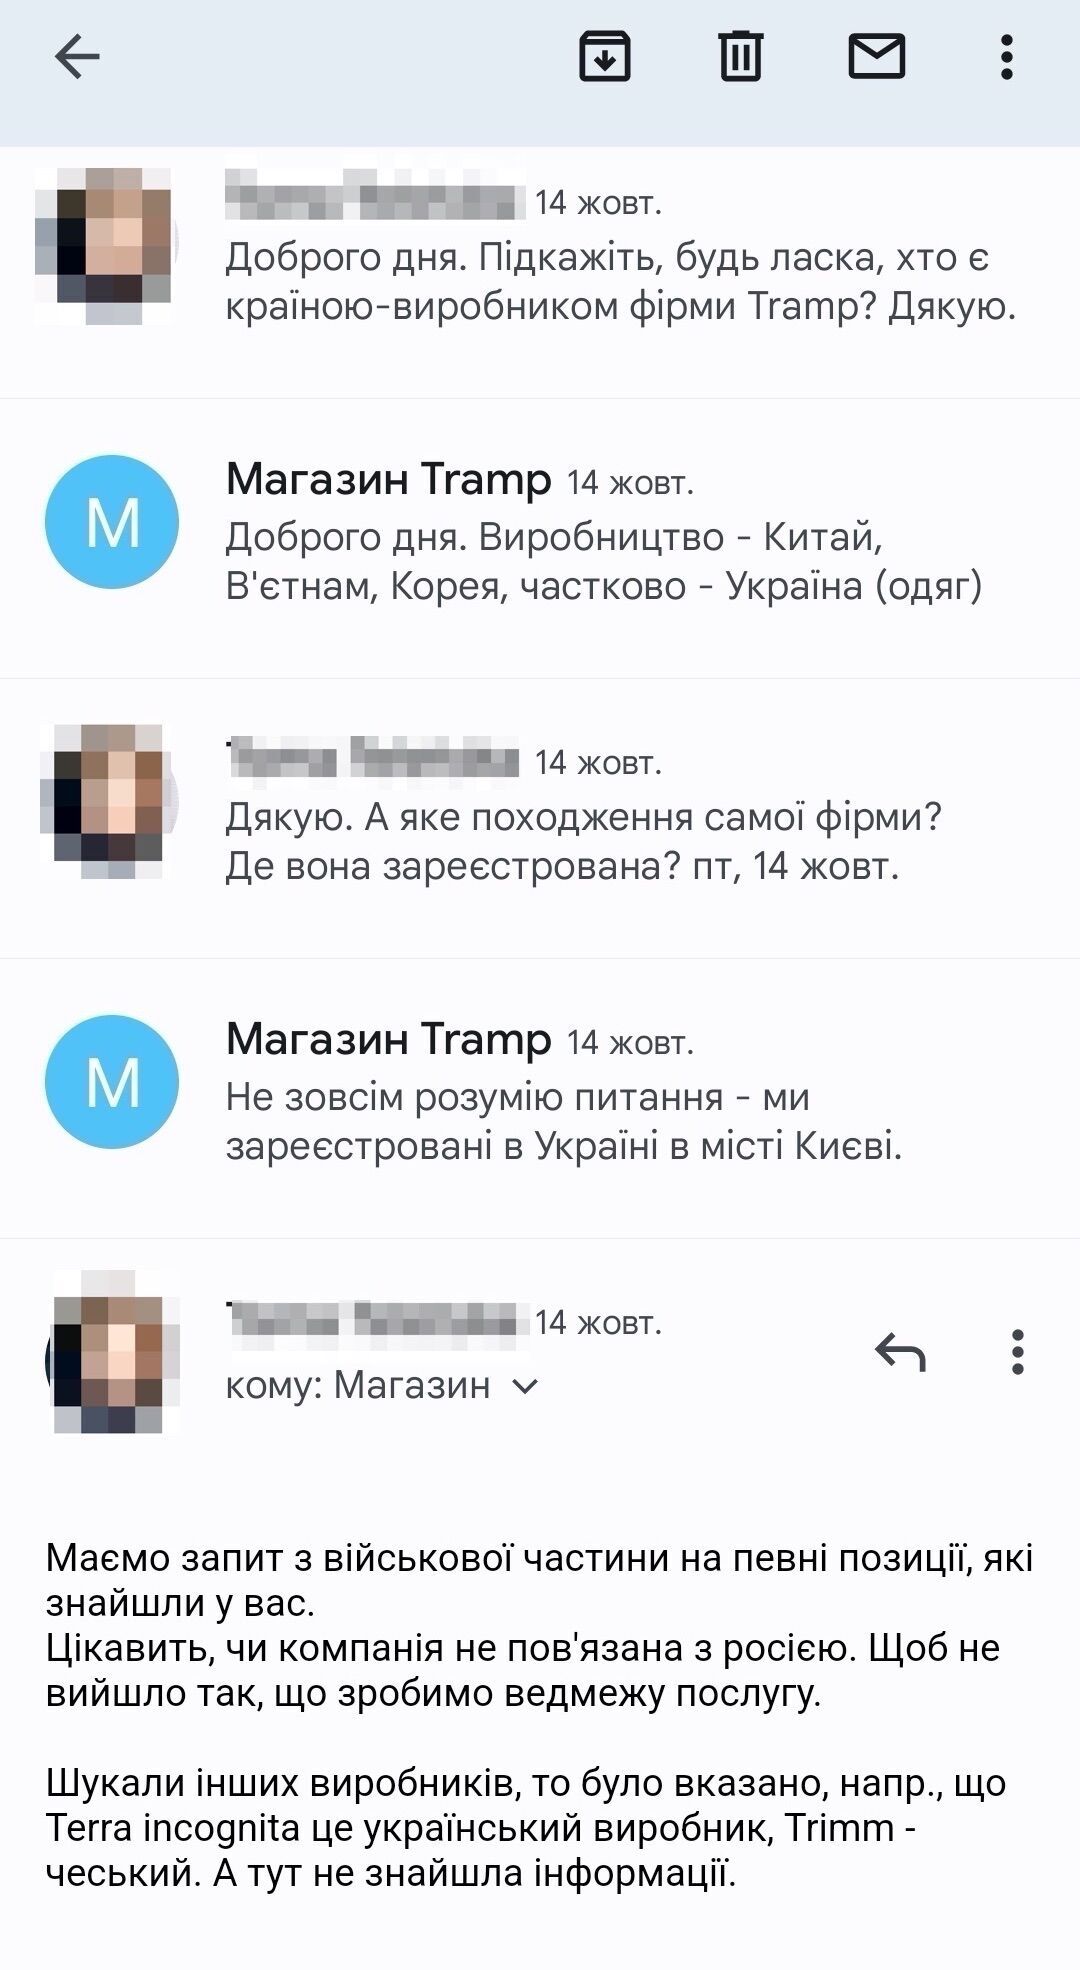 Представник українського інтернет-магазину Tramp уникає коментарів щодо країни-виробника продукції